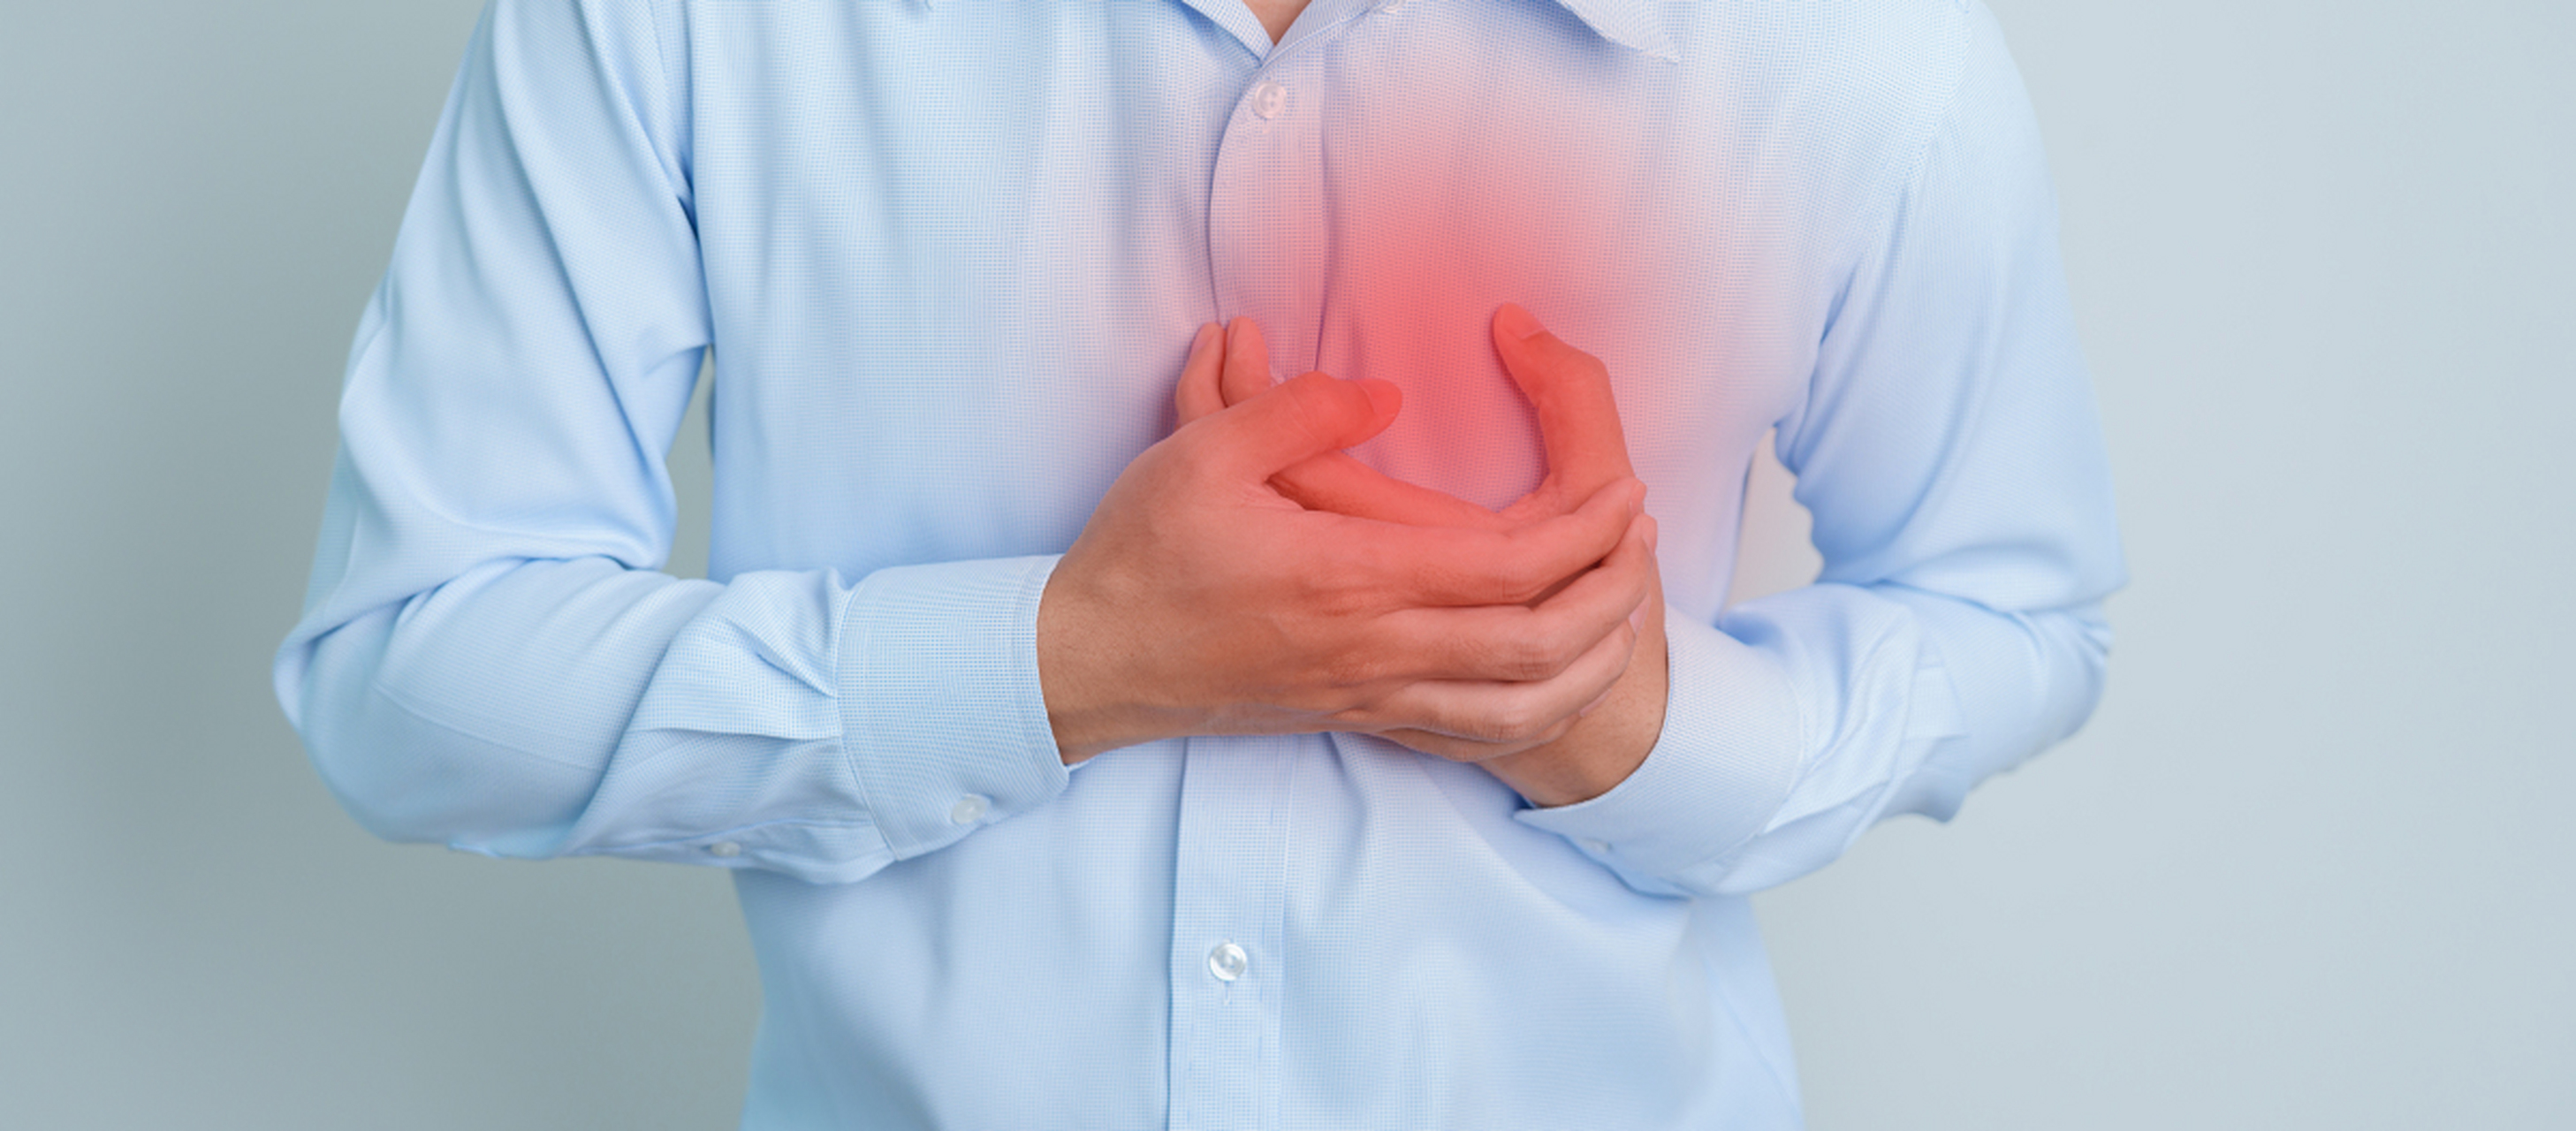 剧烈胸痛:如果出现剧烈胸痛,可能是心绞痛,心肌梗死等心脏疾病的毕种